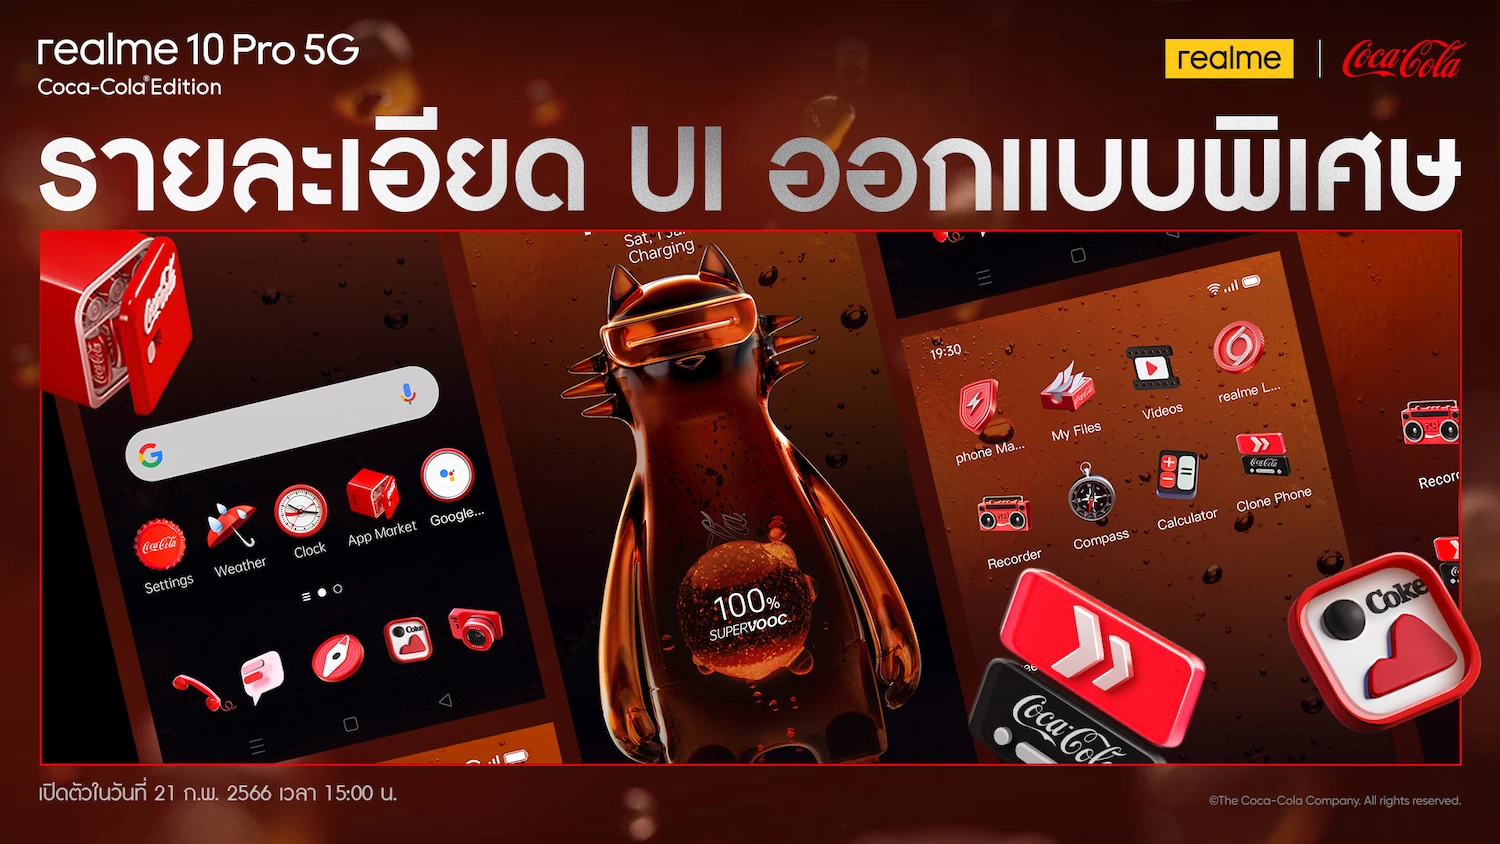 6เปิดตัว realme 10 Pro 5G Coca Cola UI ออกแบบพิเศษ สำเนา | Coca-Cola Edition | รวมข้อมูล realme 10 Pro 5G Coca-Cola Edition รุ่นพิเศษสายโค๊ก เปิดราคา 11,999 บาท